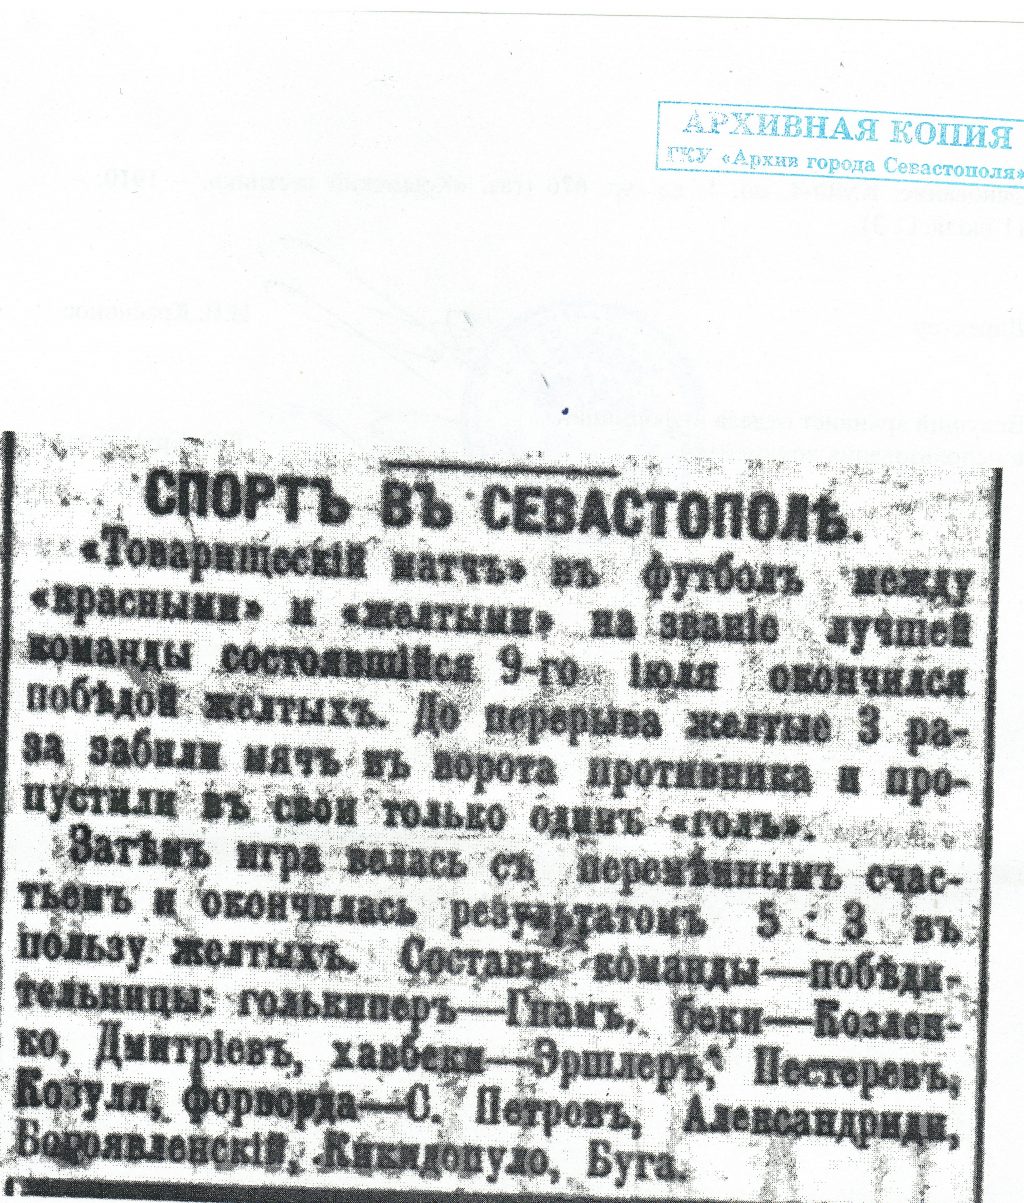 Архивная копия той самой статьи о первом футбольном матче, сыгранном в Севастополе.